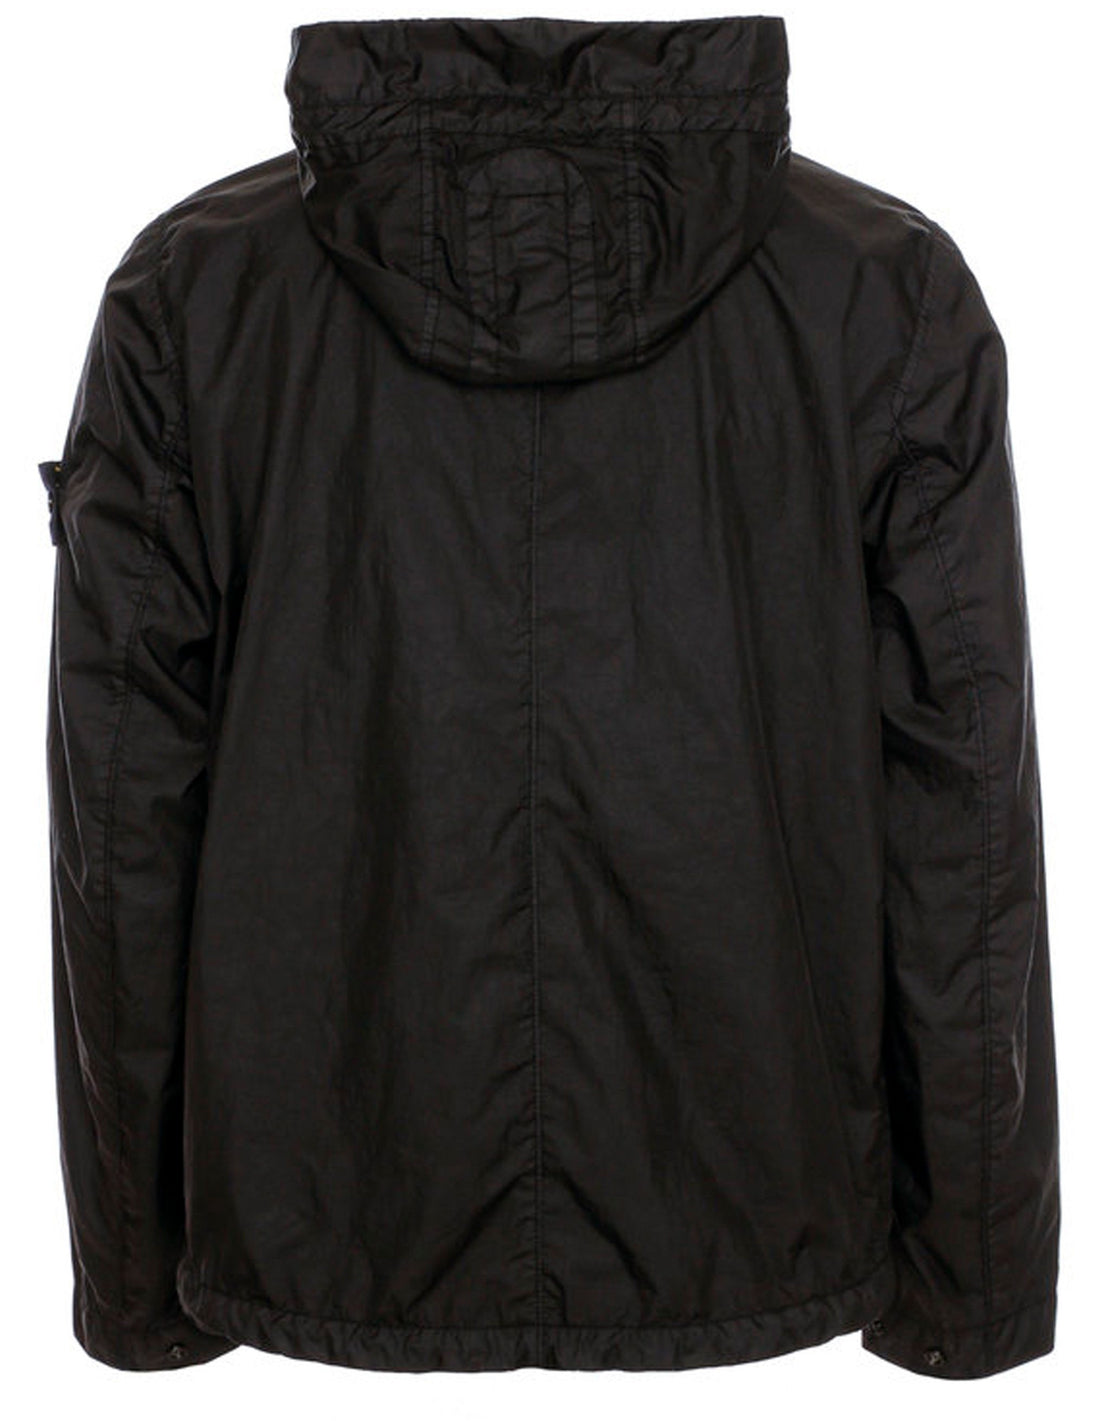 STONE ISLAND Hooded Performance Jacket Black - MAISONDEFASHION.COM